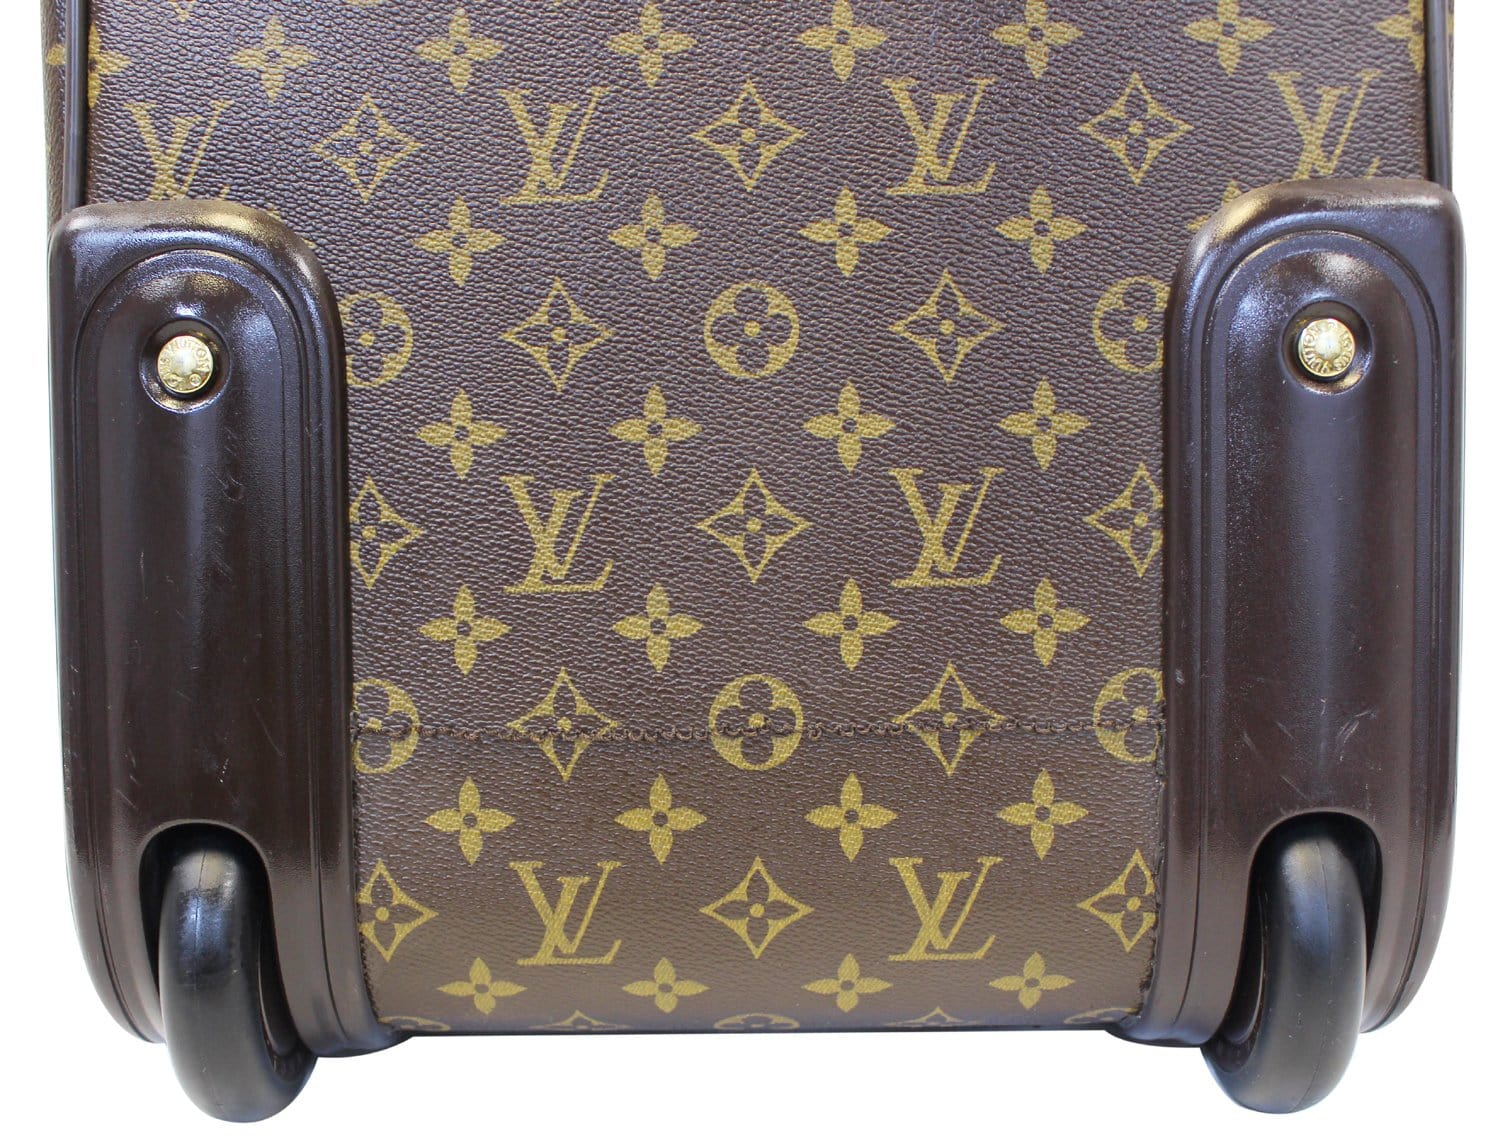 Louis Vuitton Pégase Légère 55 Business - ShopStyle Rolling Luggage